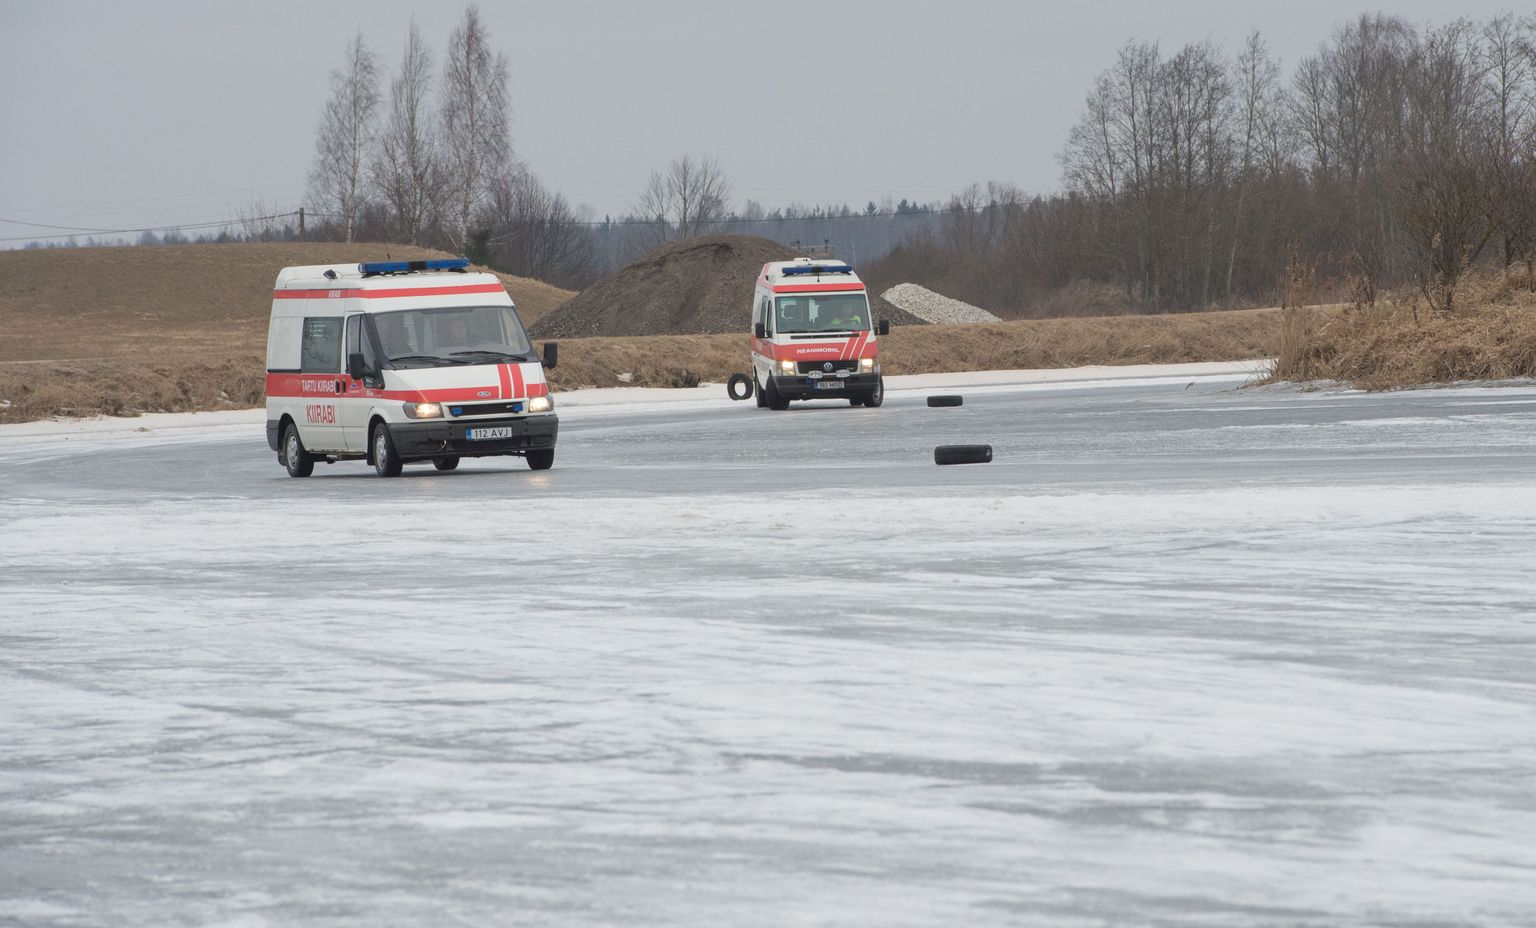 Ilmatsalu järve jääl sõitu harjutanud kogenud sohvrid suutsid masina sirgeks saada ka lootusetuna näivast külglibisemisest.